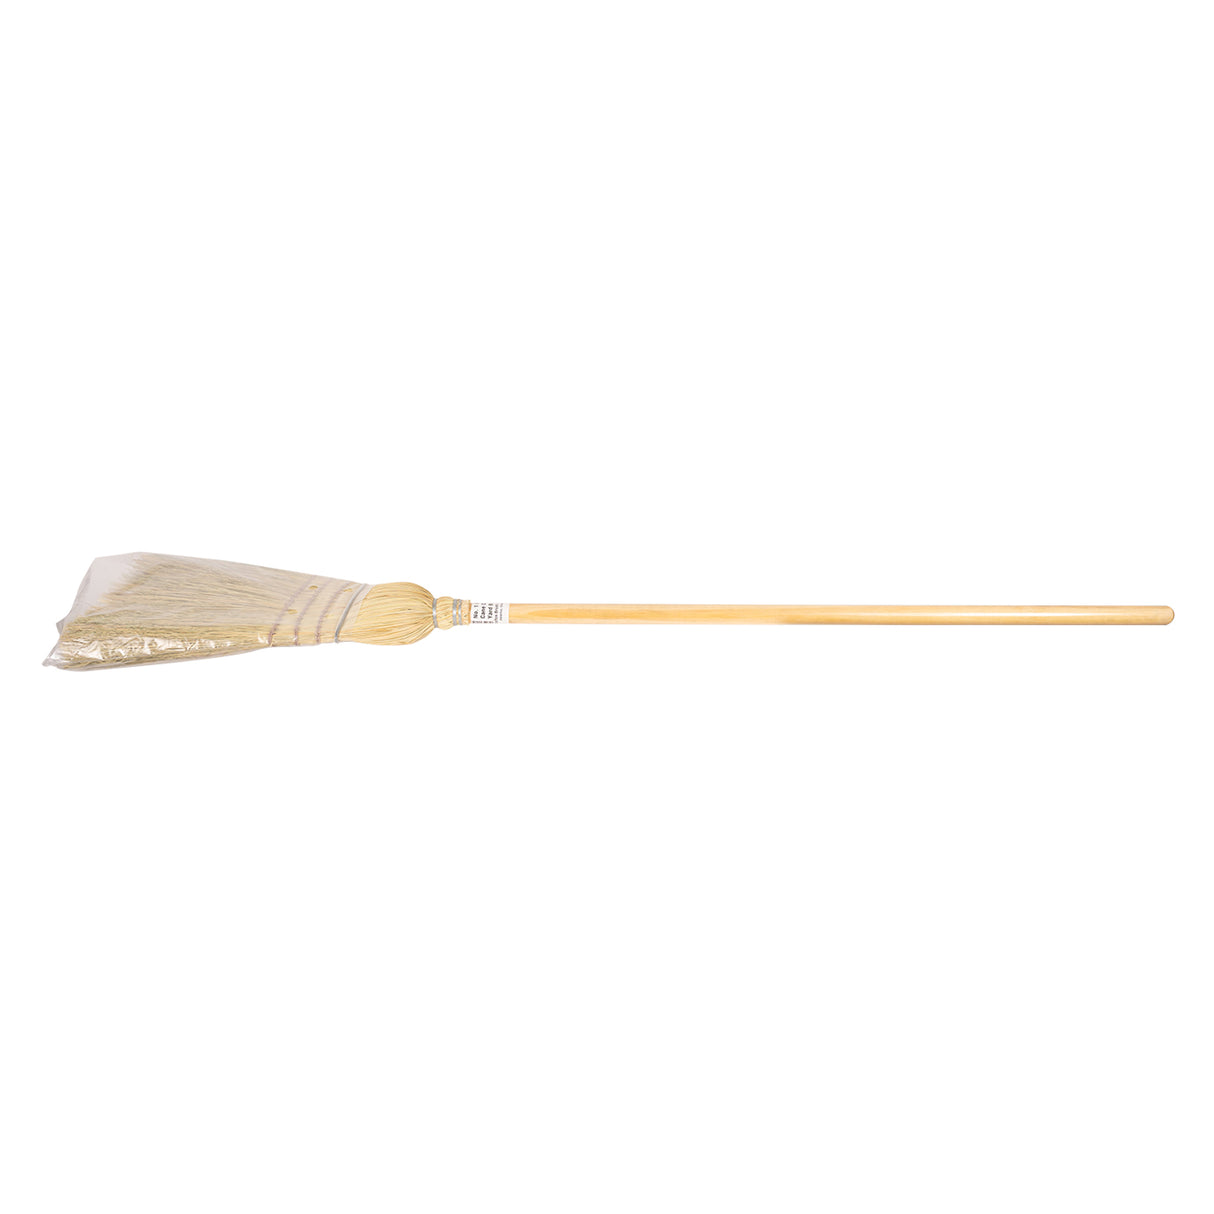 Deluxe Corn Broom